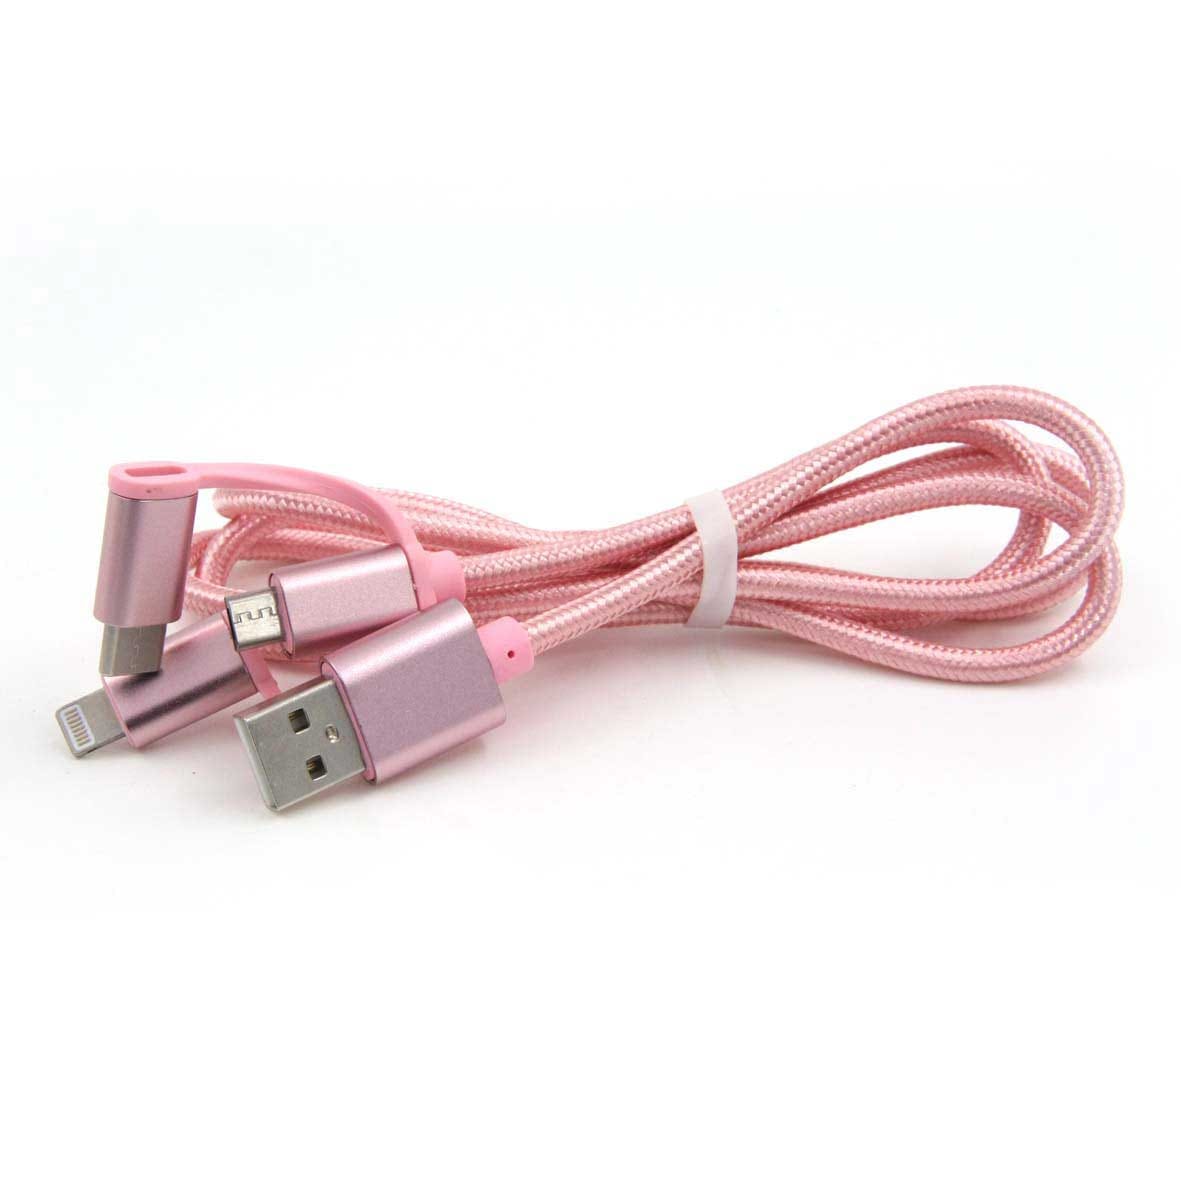 Cable USB 3 en 1 para Carga y Transferencia de Datos iOS/Android